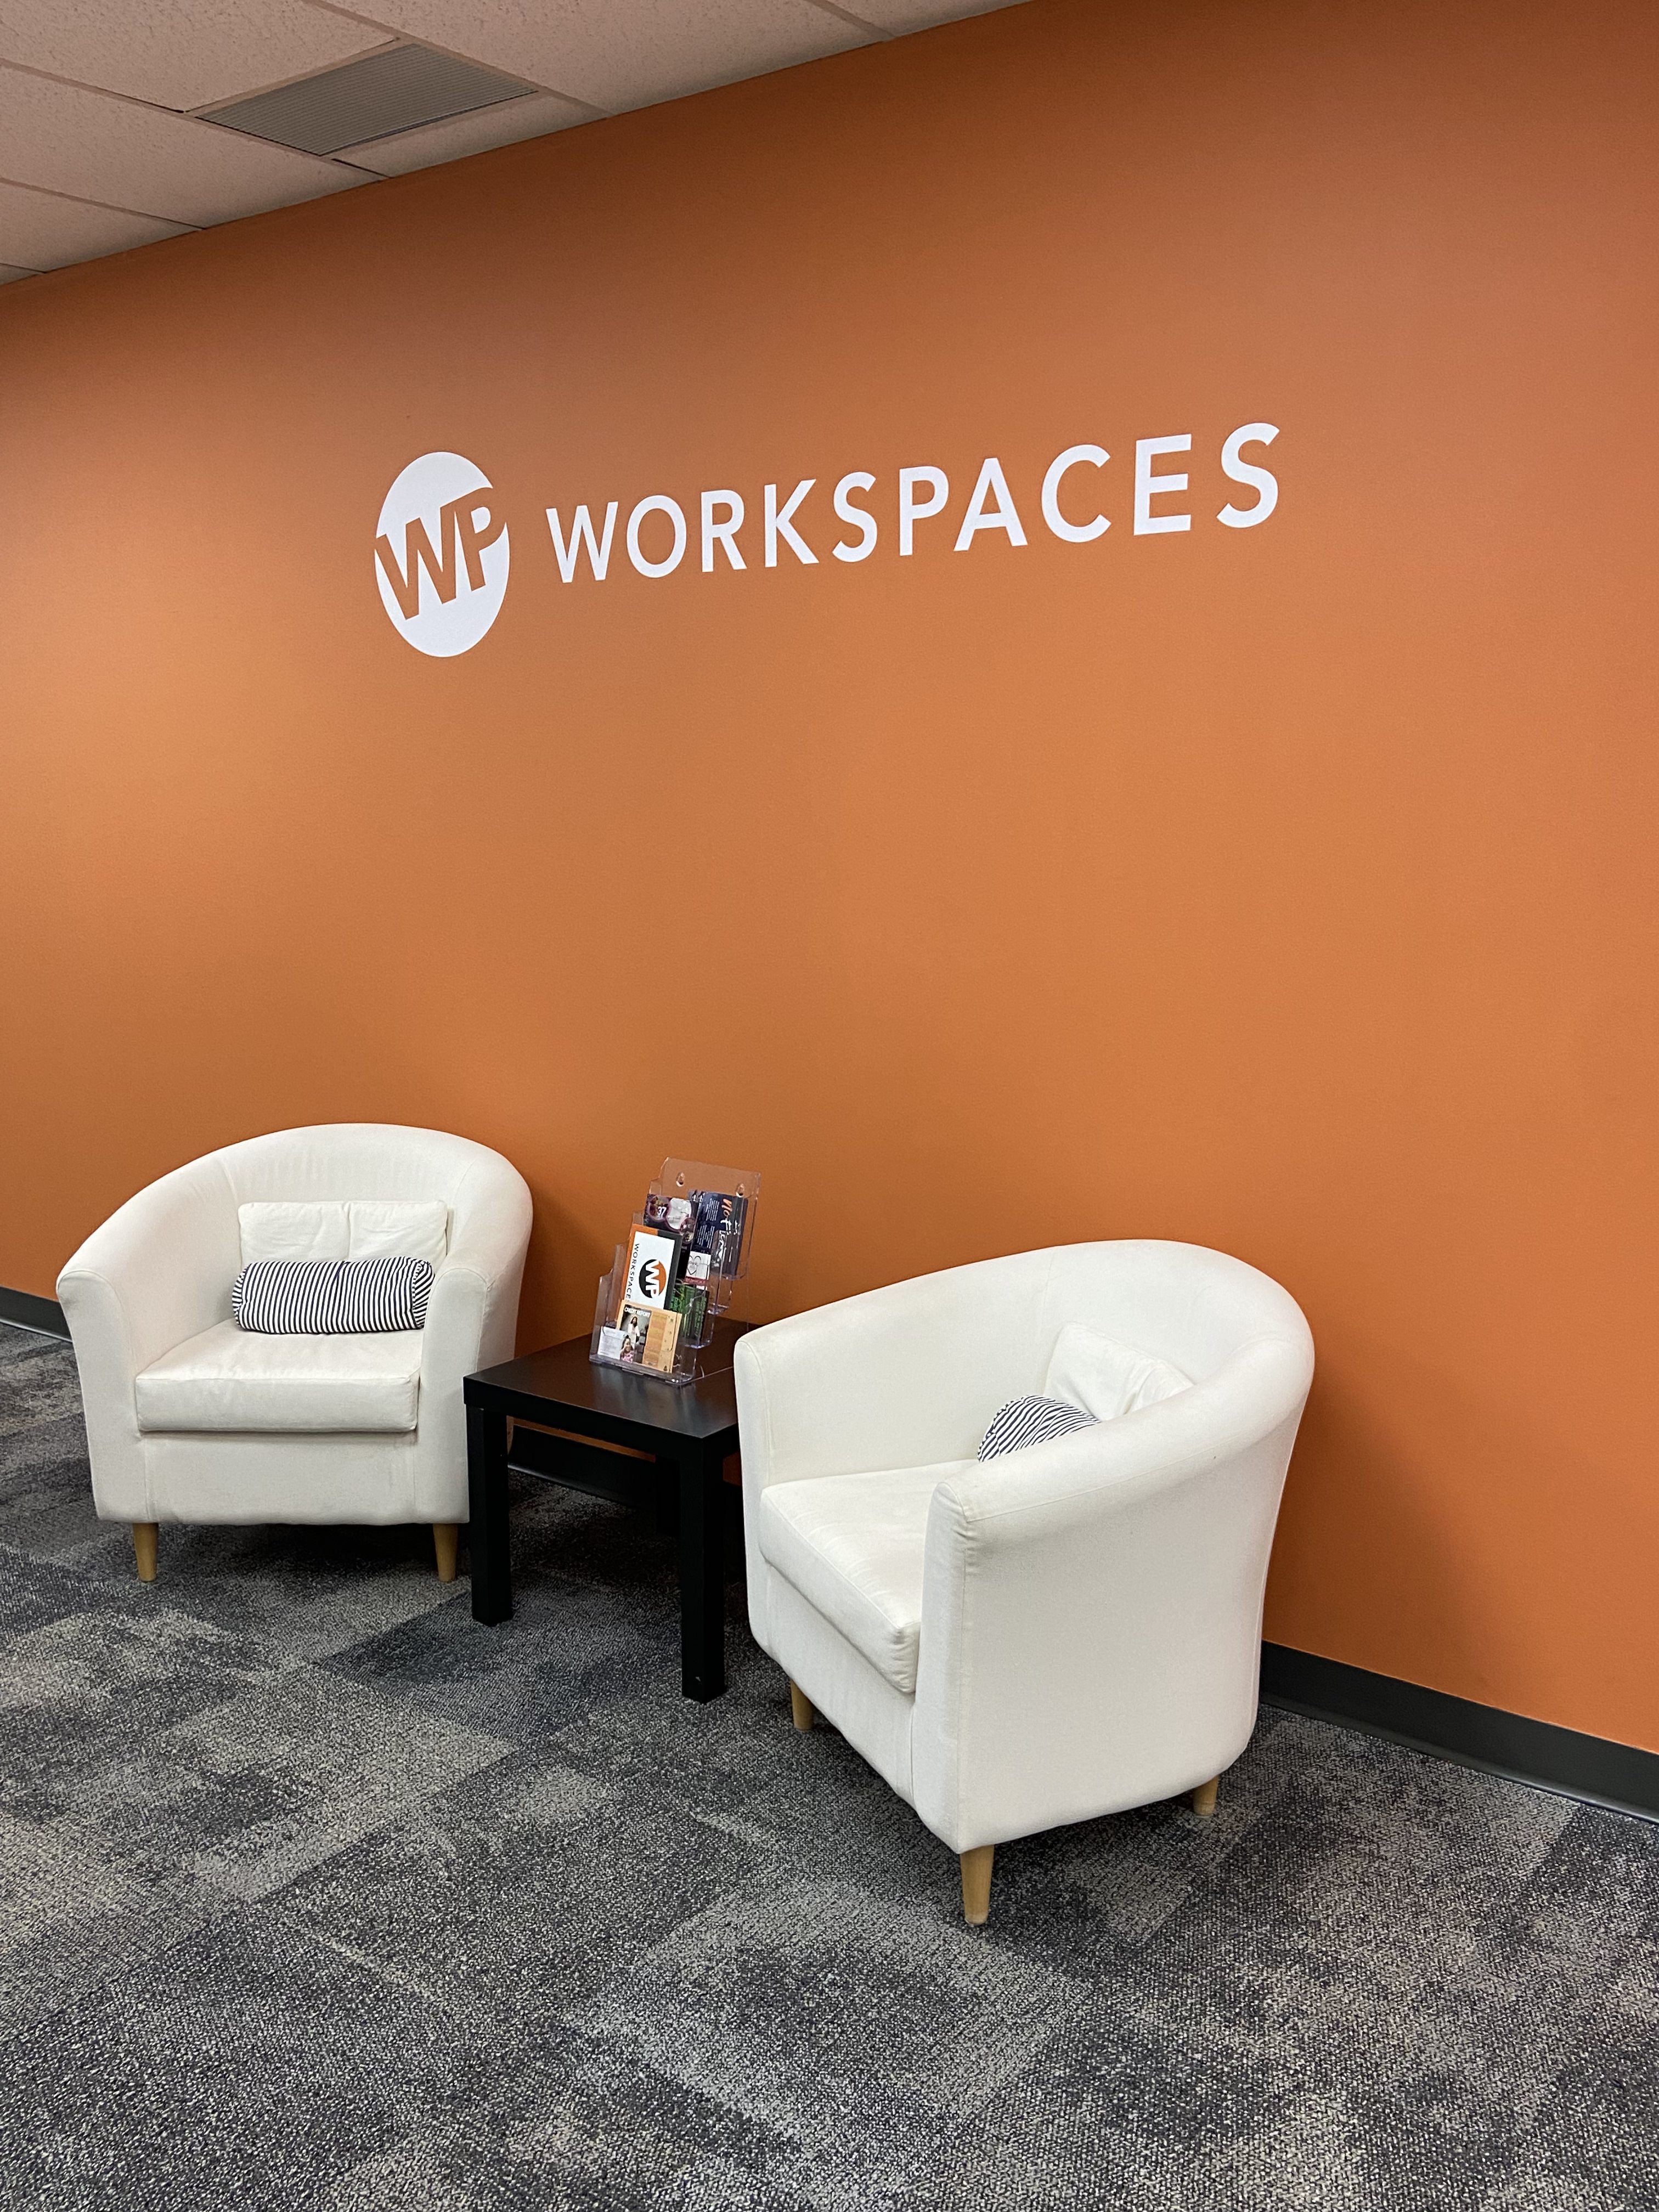 WP Workspaces